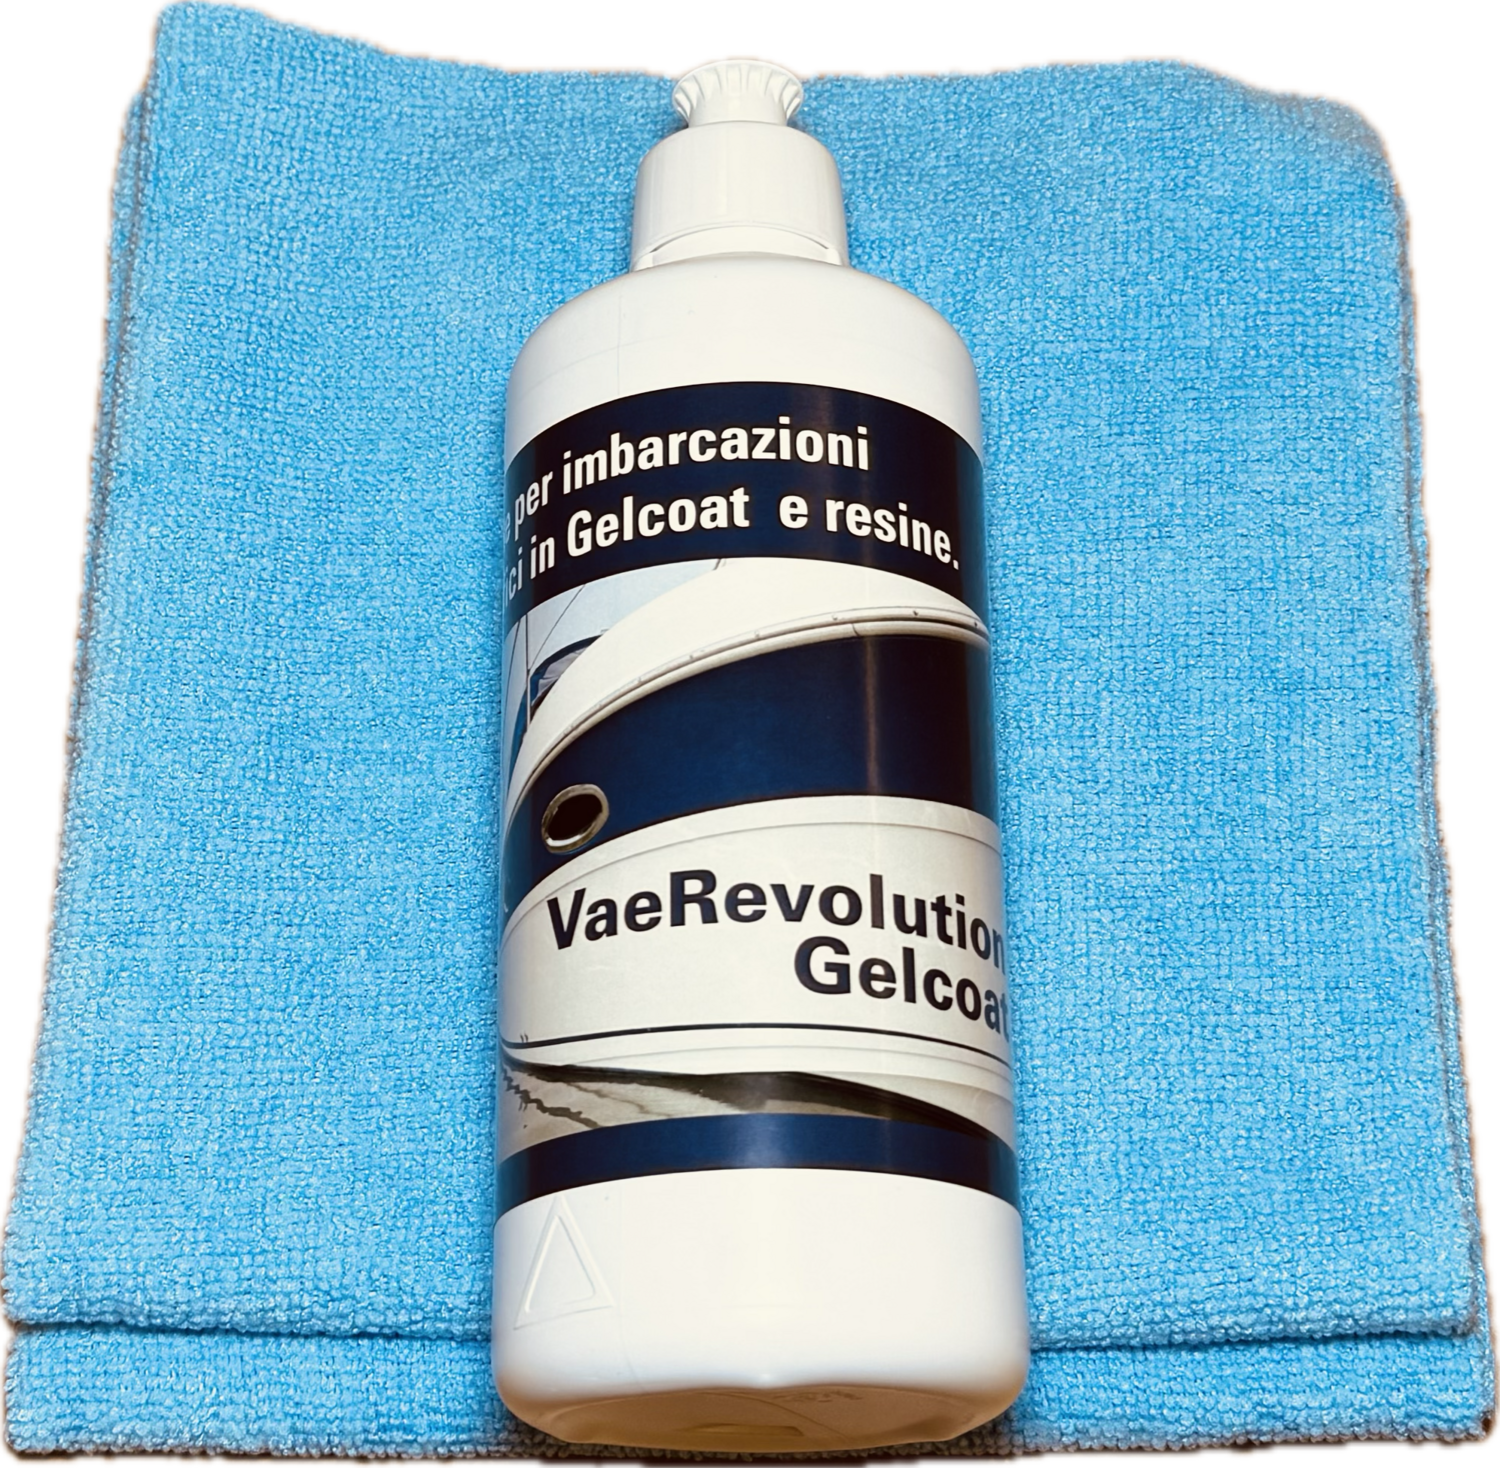 VaeRevolution Gelcoat (2 panni multifibre omaggio)